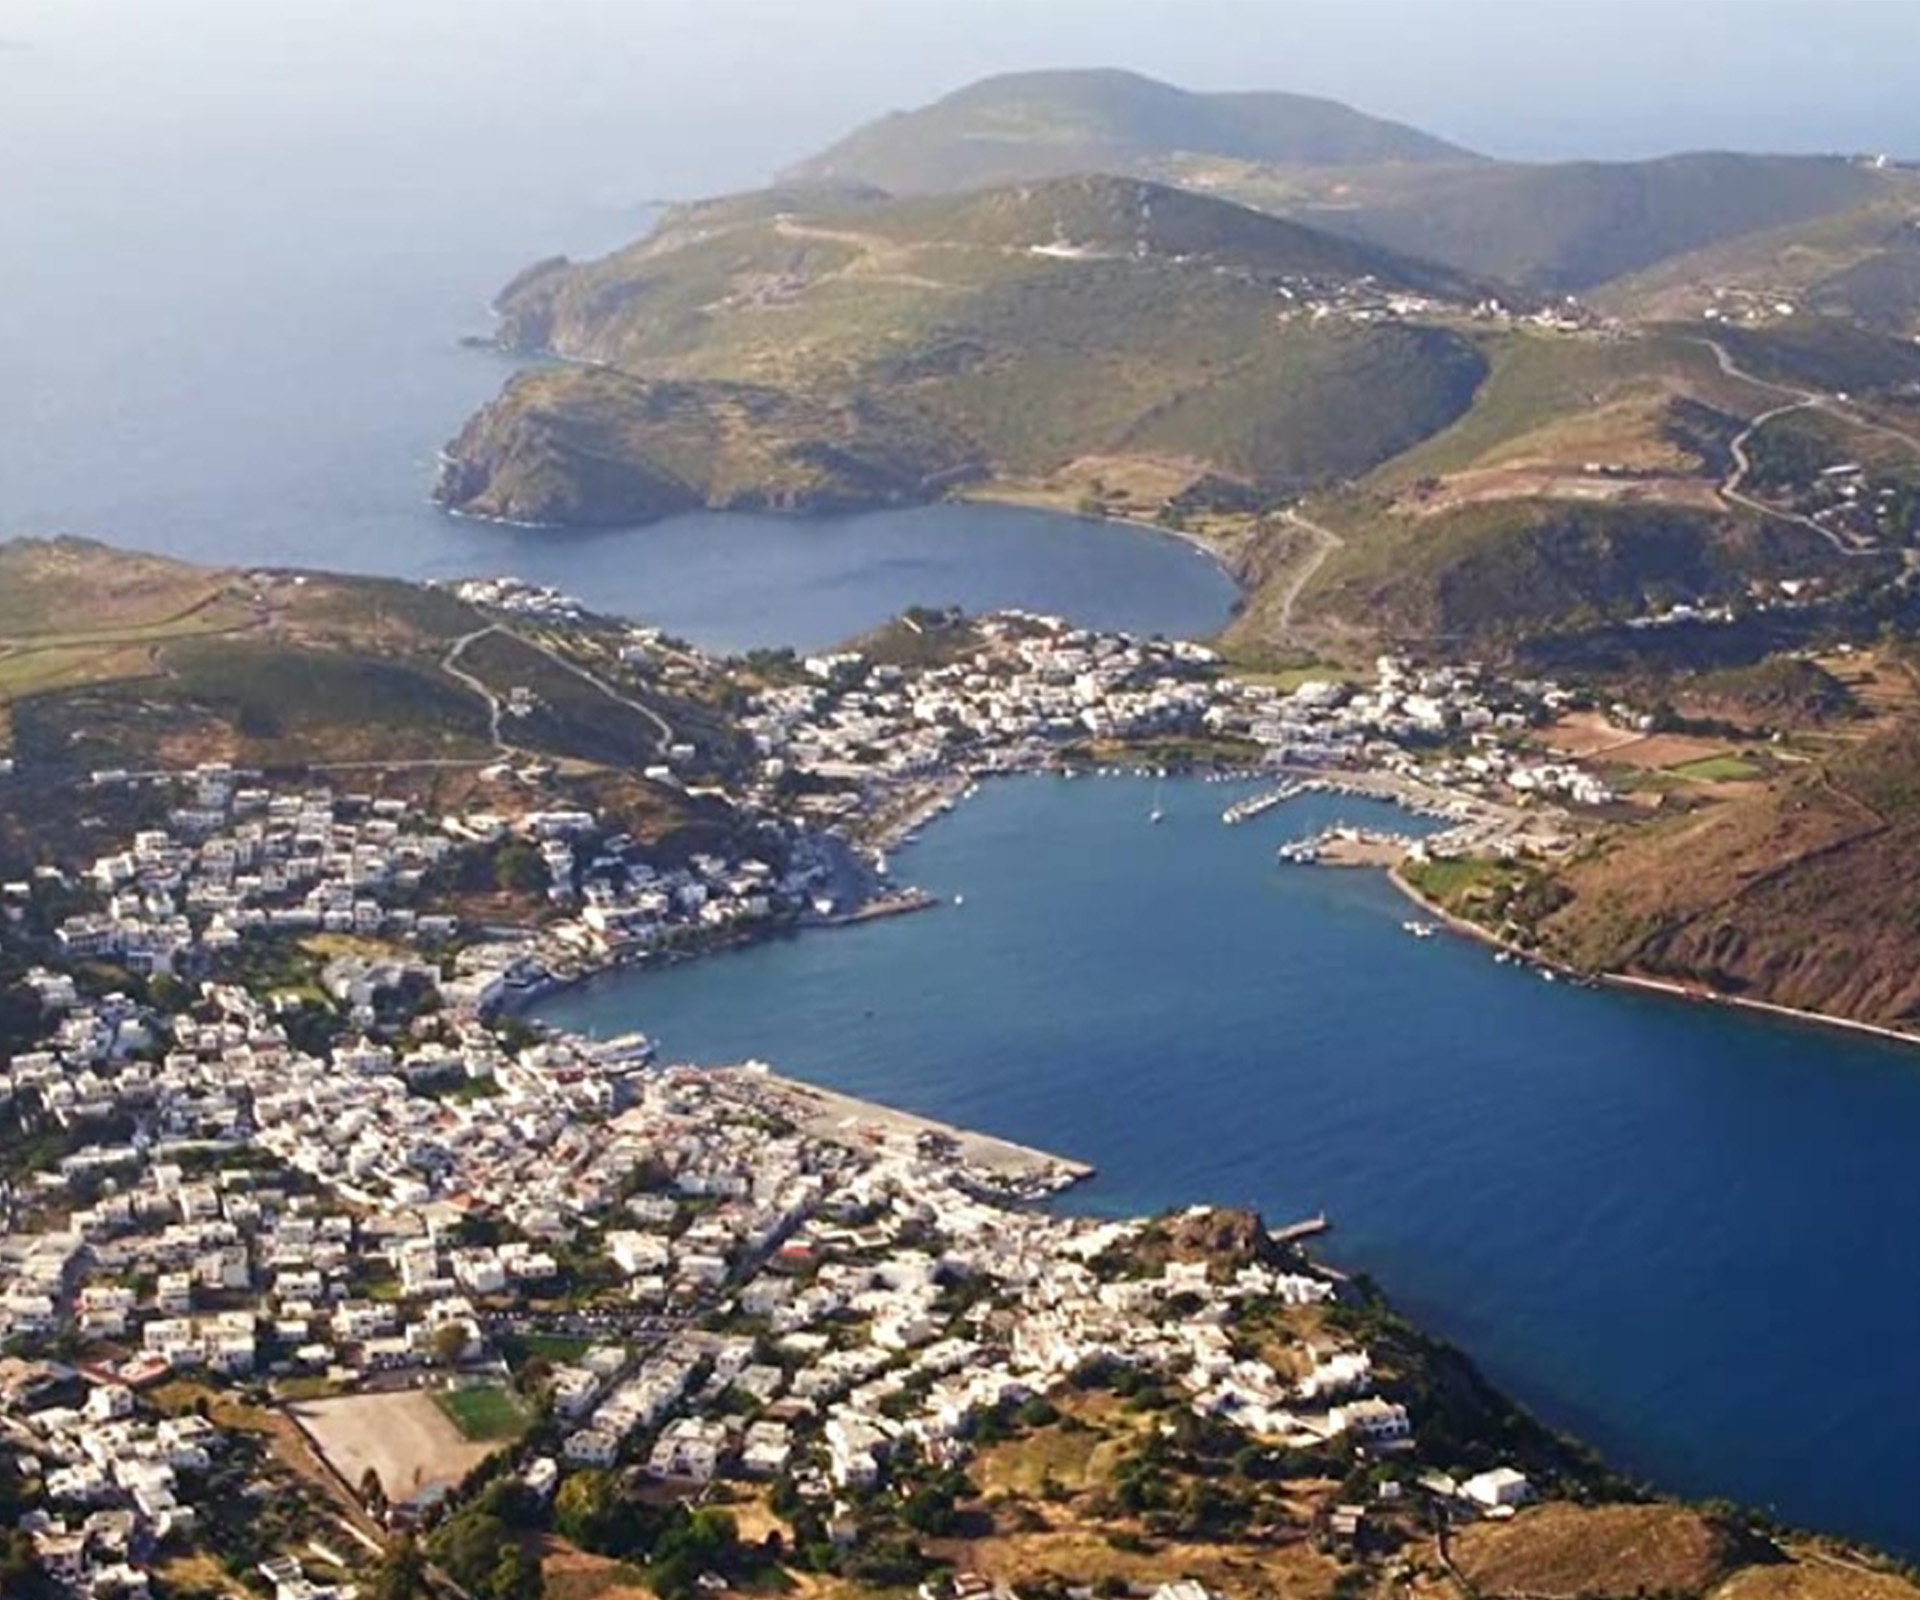 The Mediterranean region - Birds eye view of Patmos